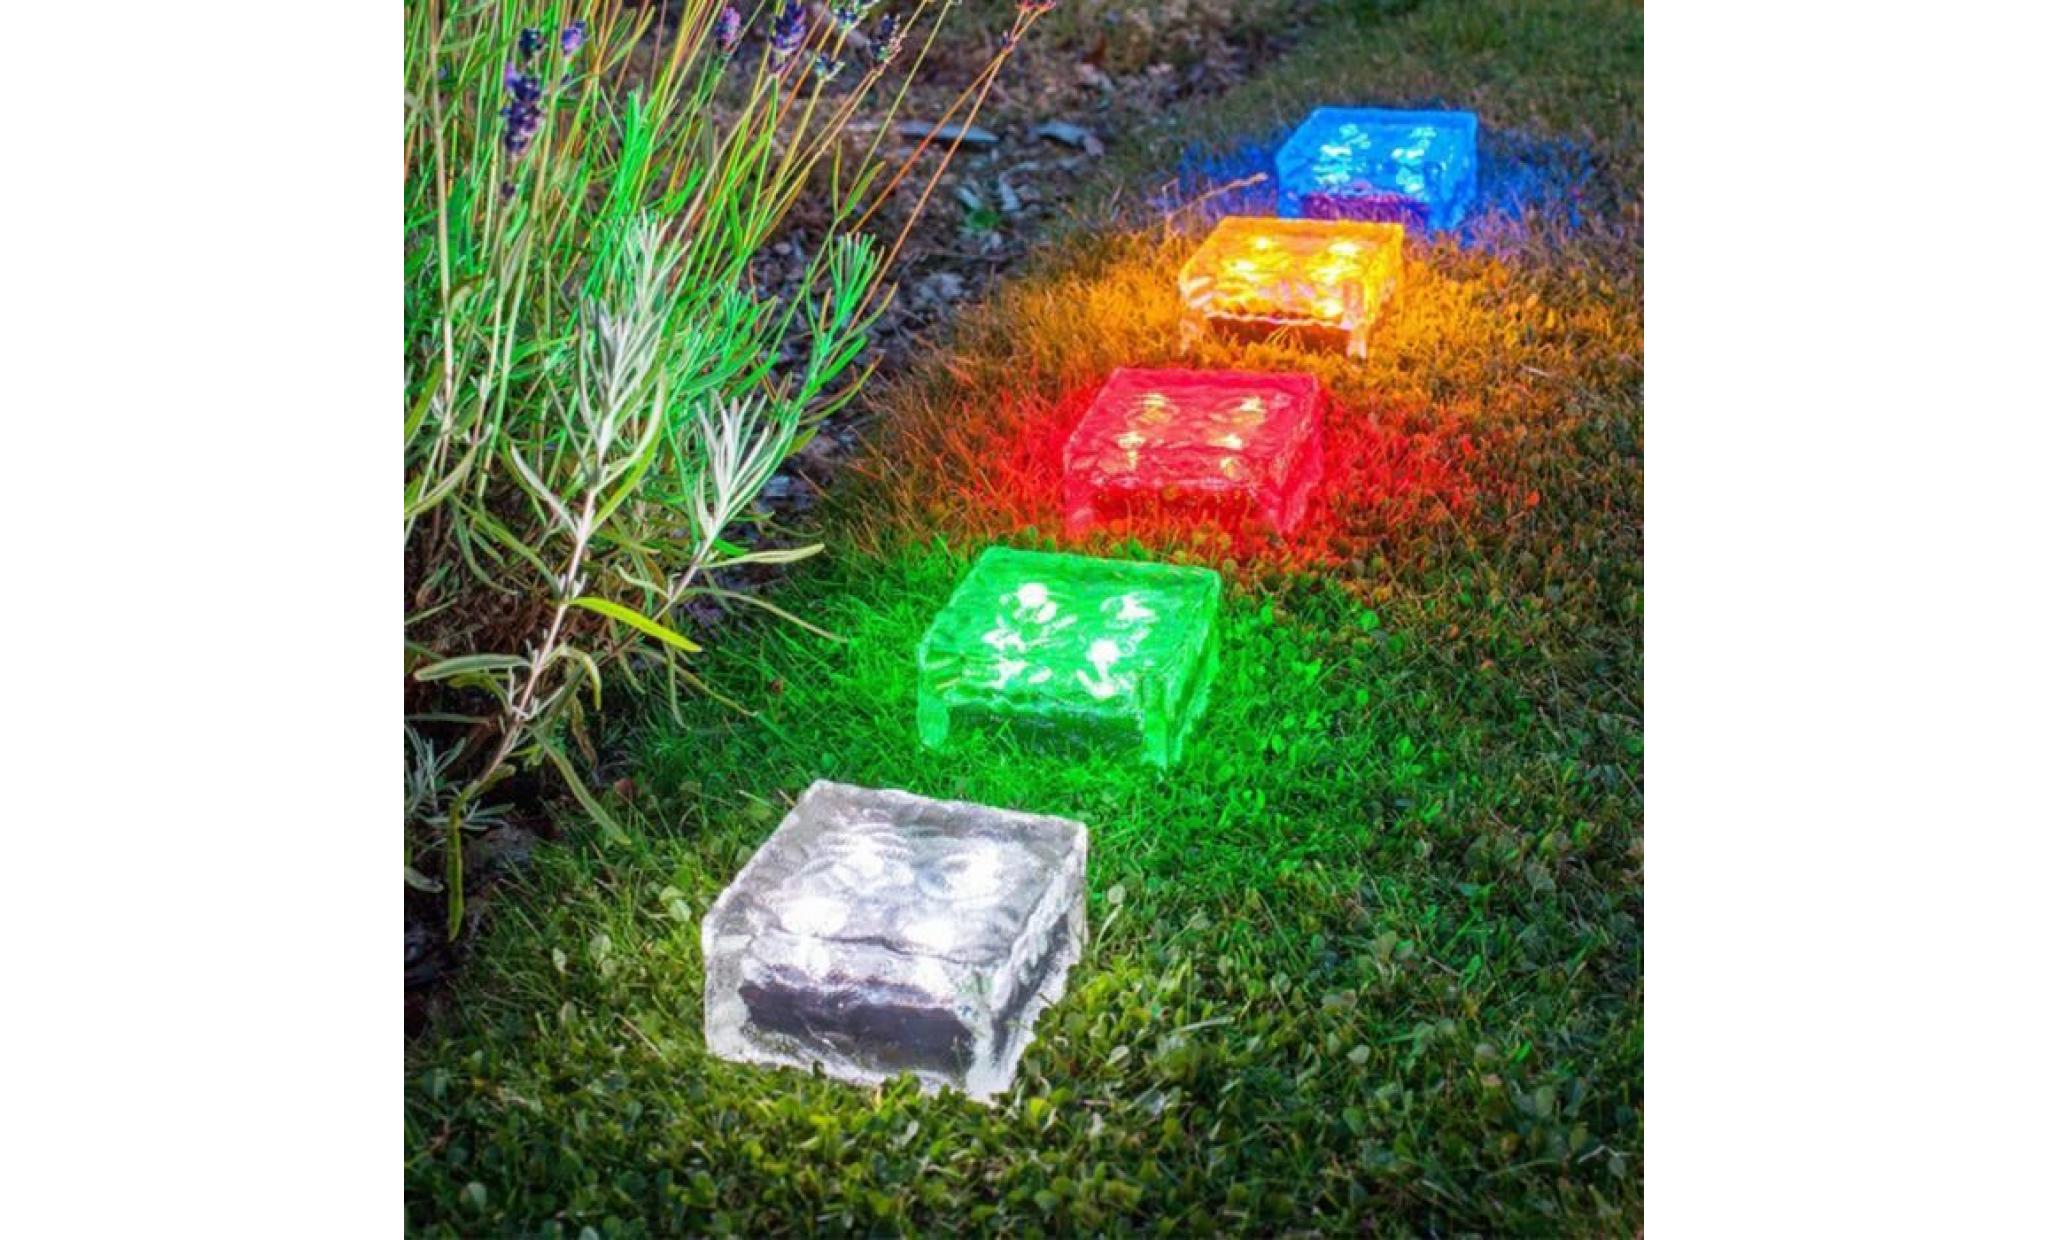 borne solaire solaire imperméable à l'eau led rock light path jardin ice cube brick decor #si 304 pas cher